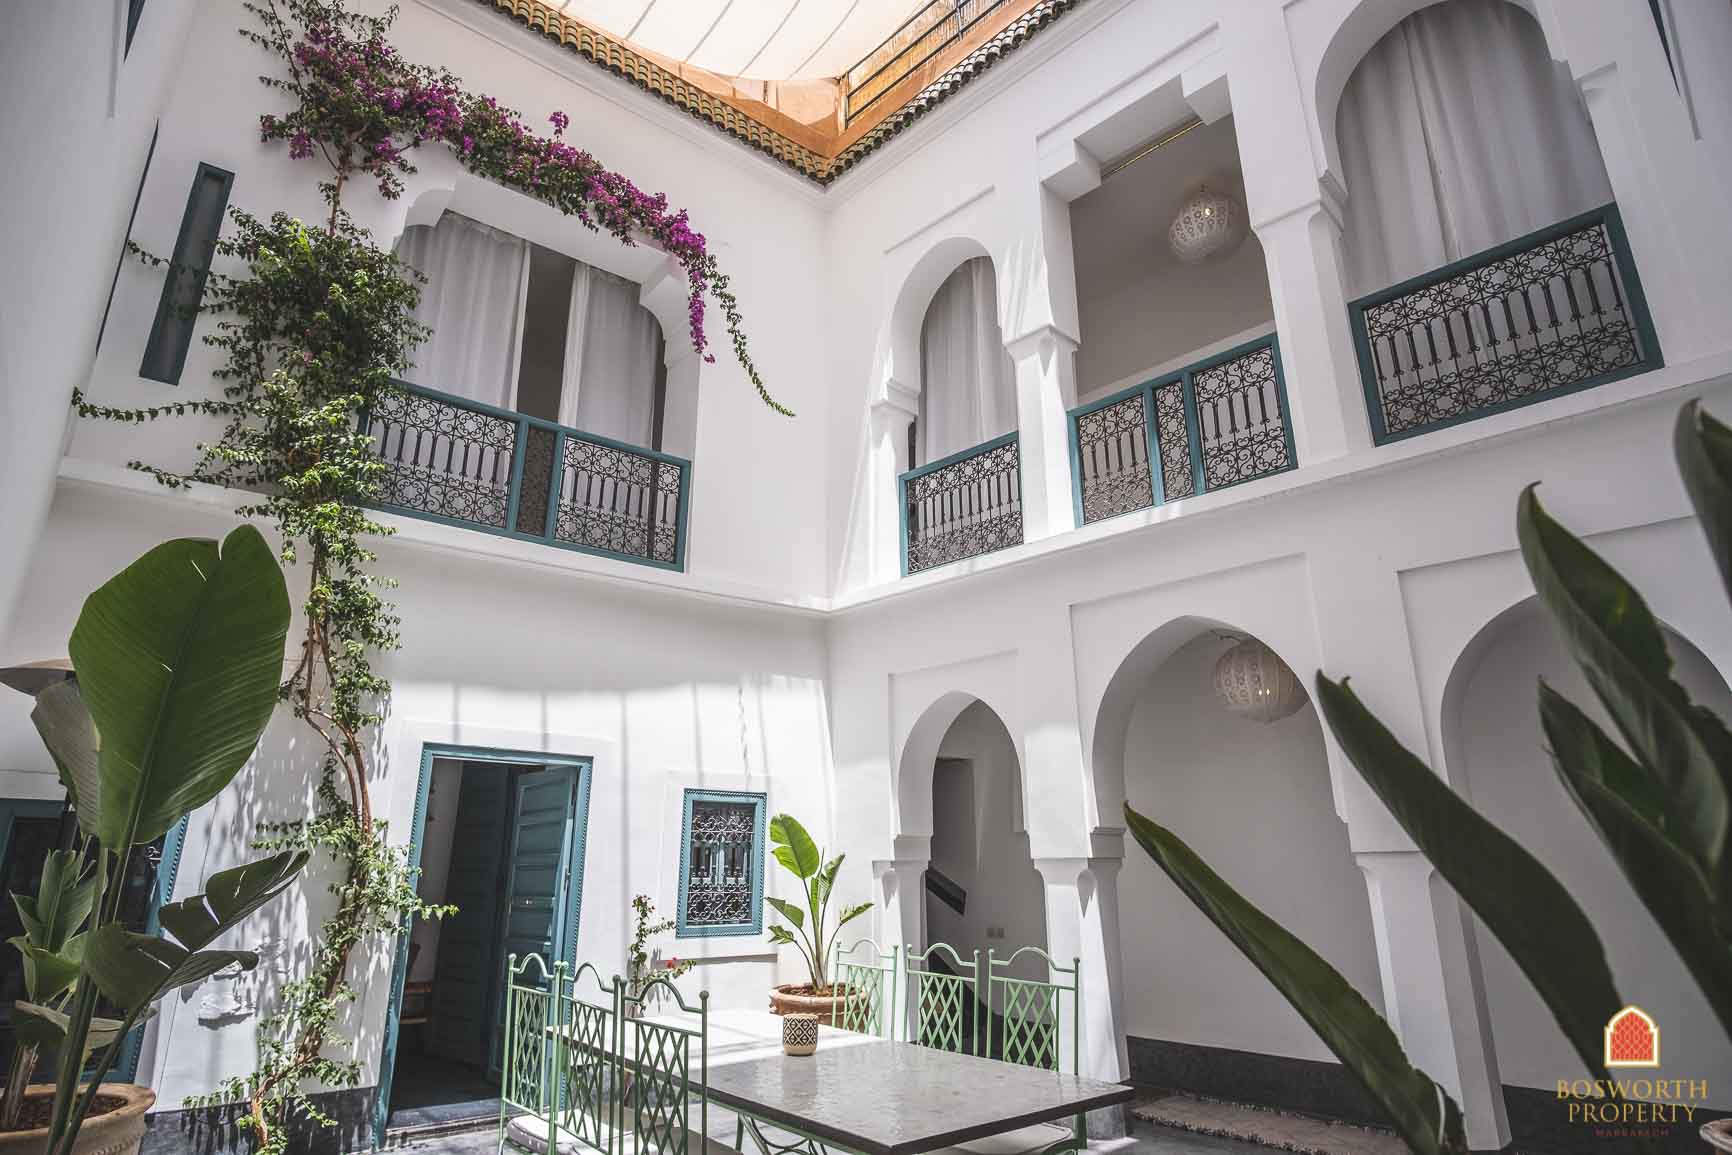 Parfait Pied à Terre Riad à vendre Marrakech - Riads à vendre Marrakech - immobilier marrakech - immobilier marrakech - riads a vendre marrakech